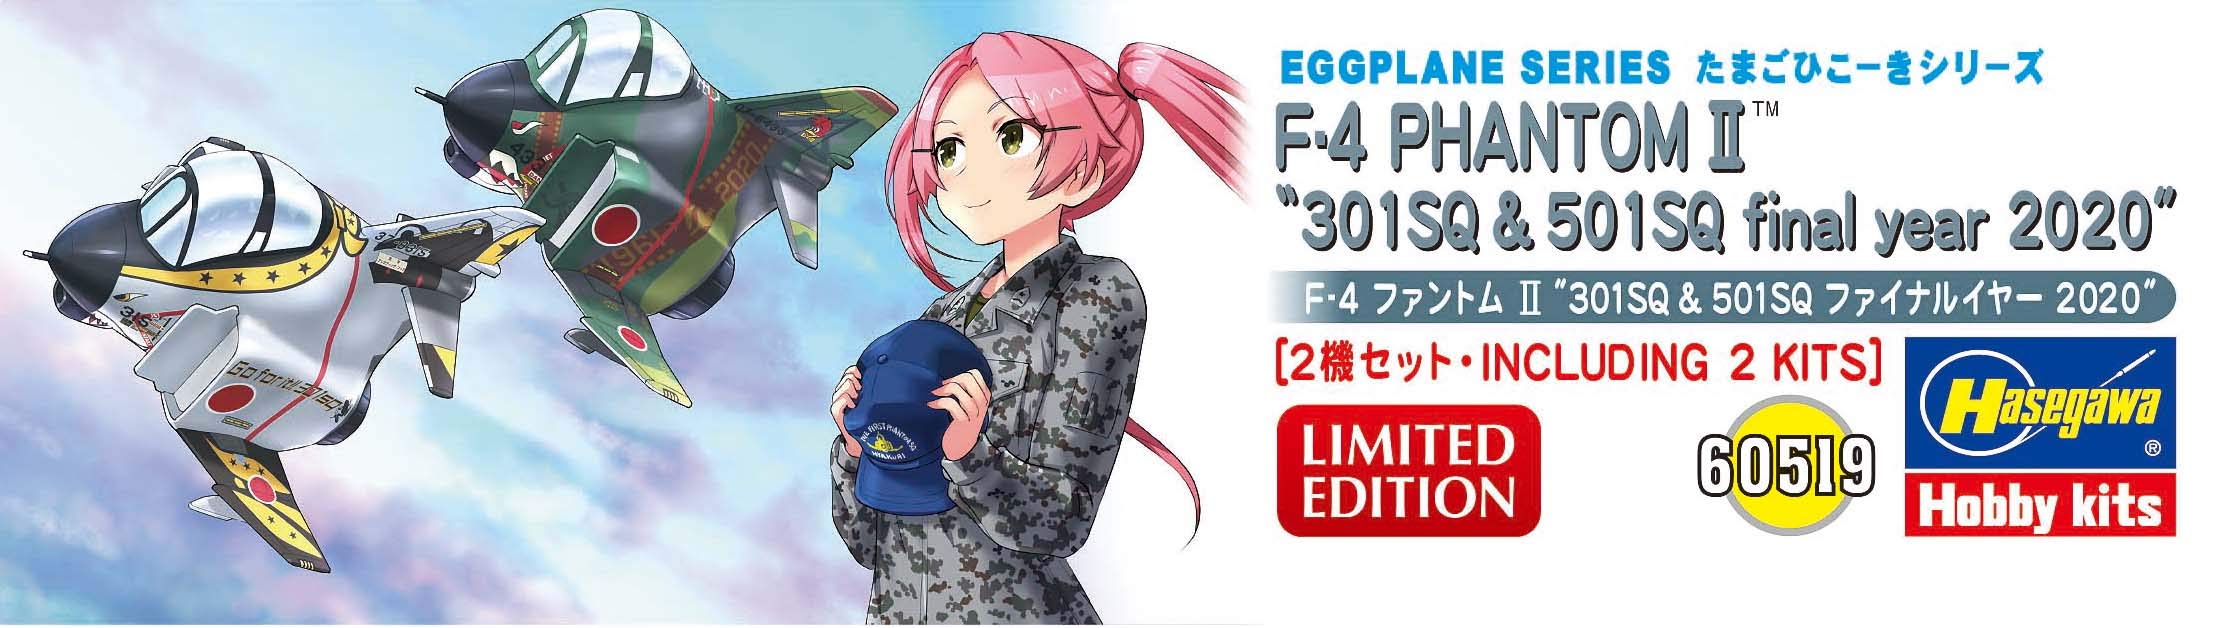 HASEGAWA Eggplane F-4 Phantom Ii 301Sq & 501Sq Final Year Plastic Model